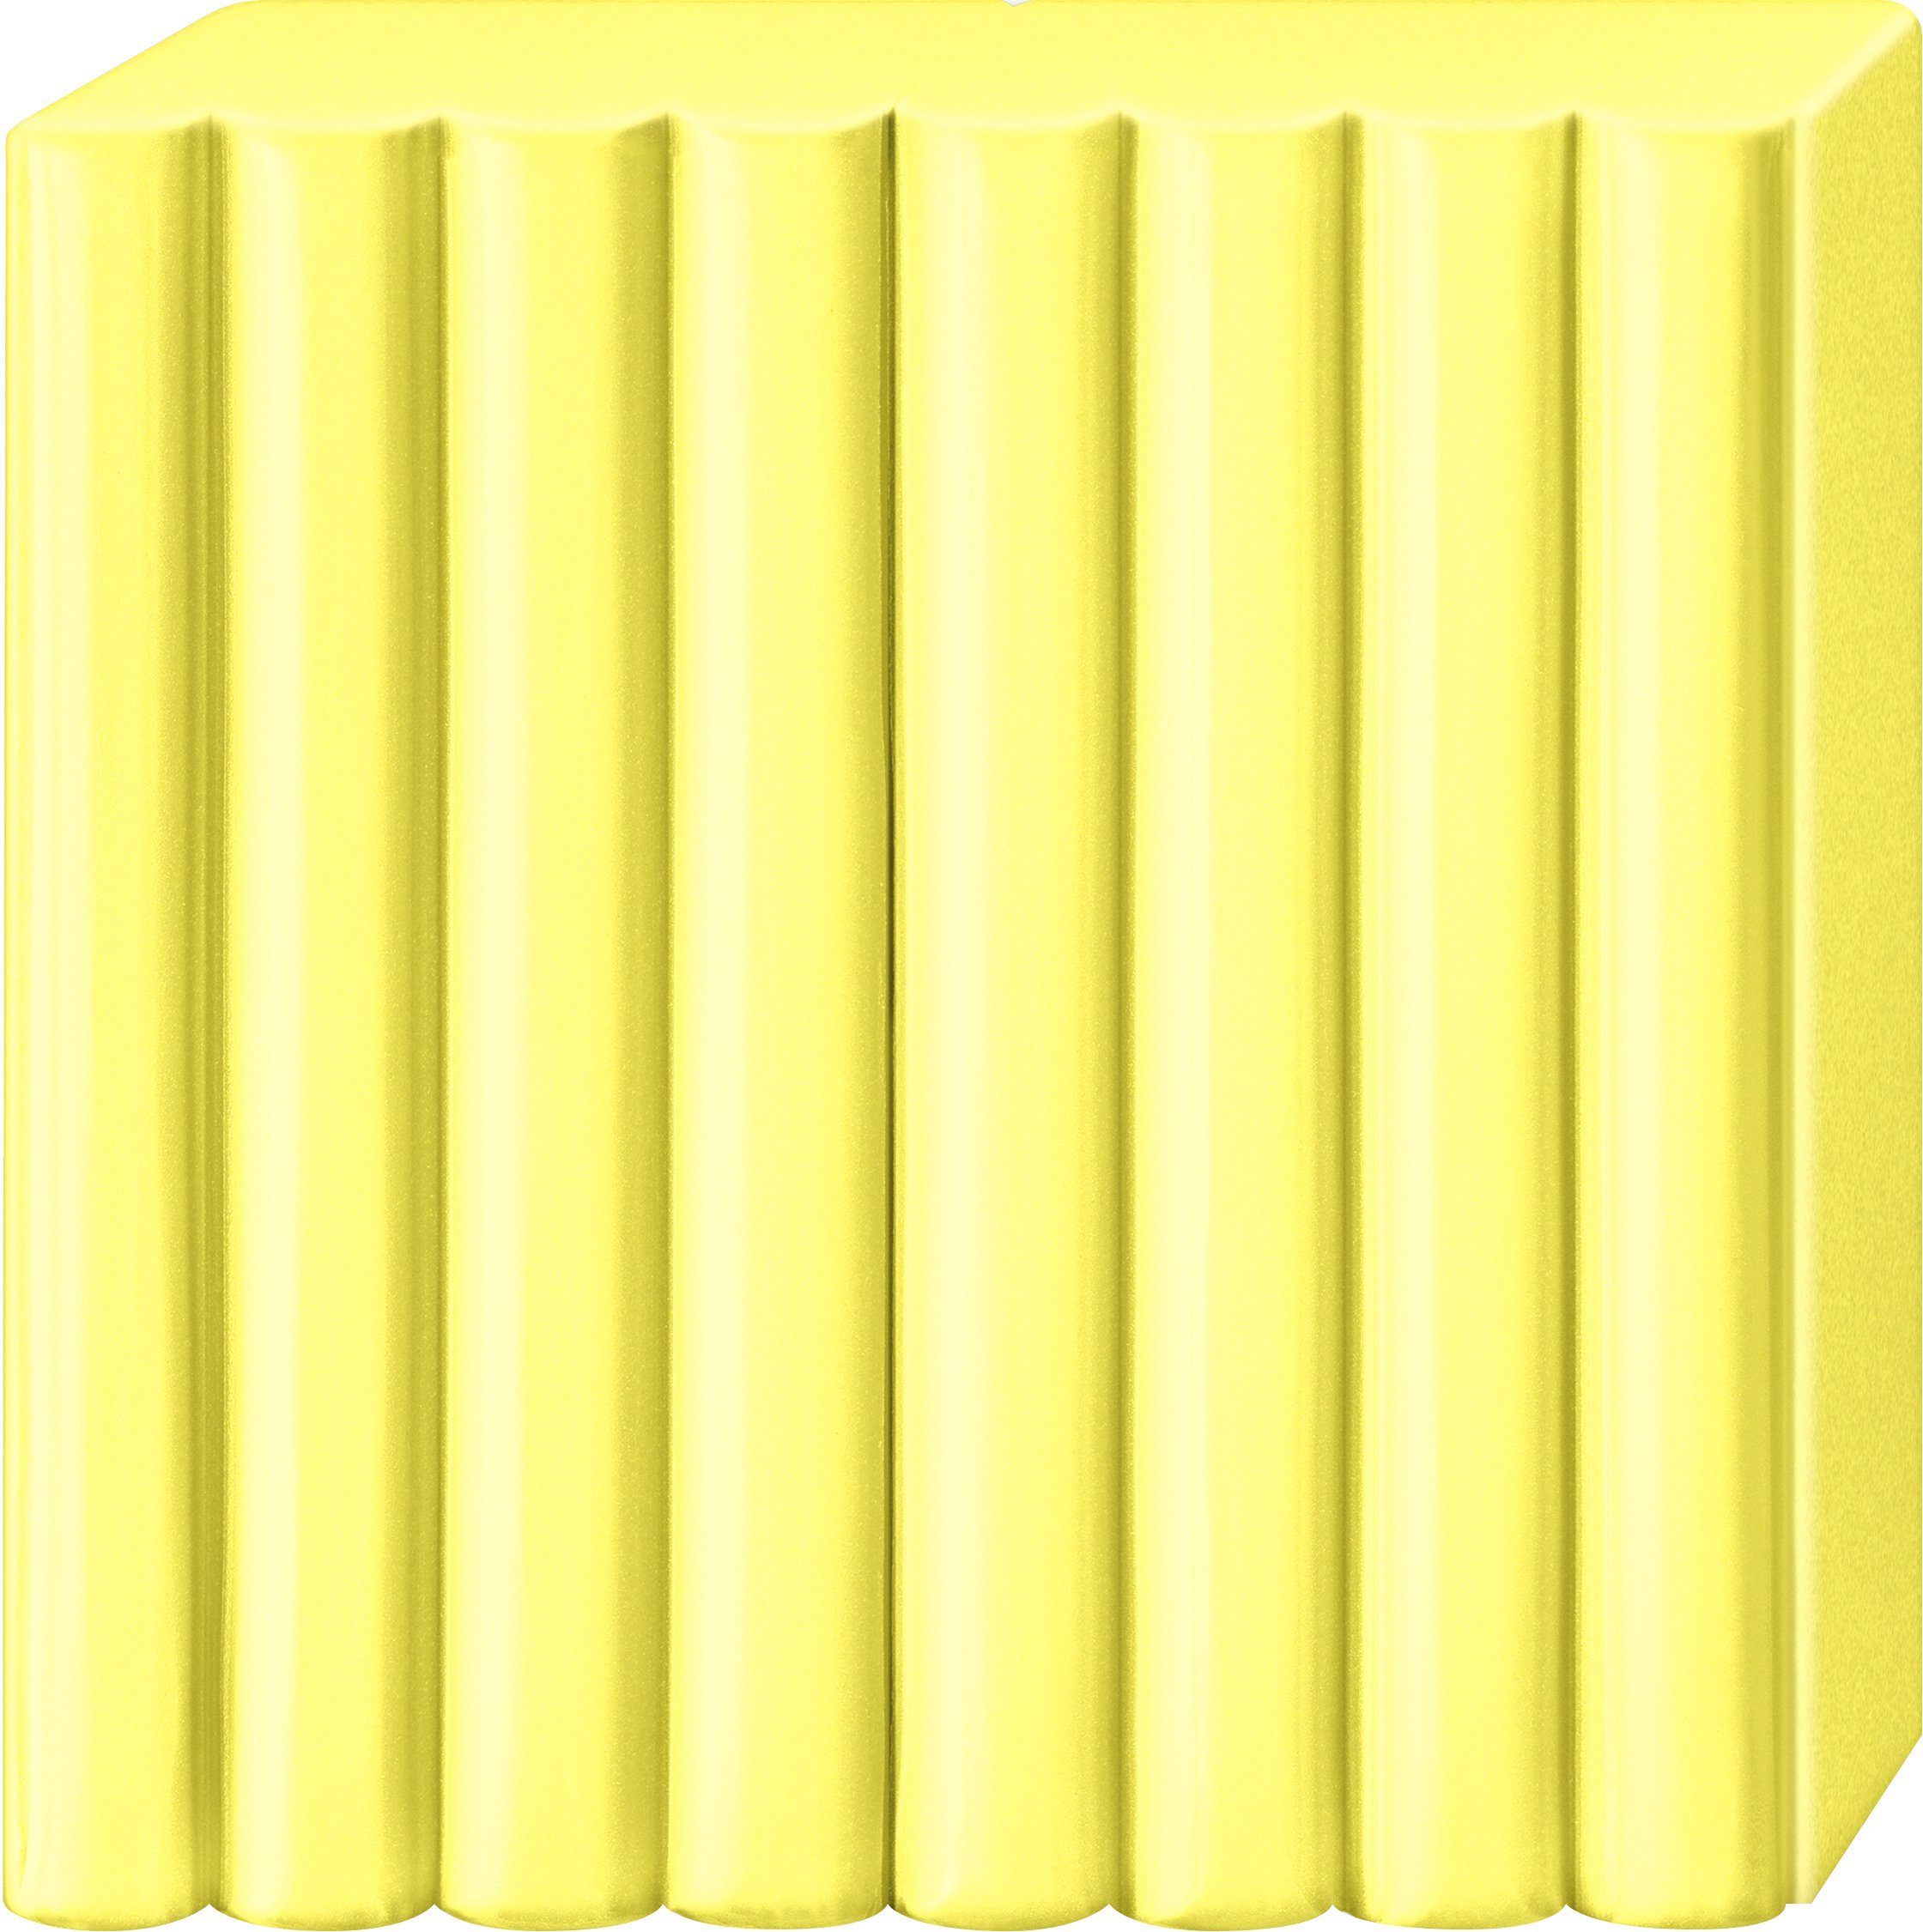 57 g FIMO EFFECT Gelb Transluzent, Modelliermasse